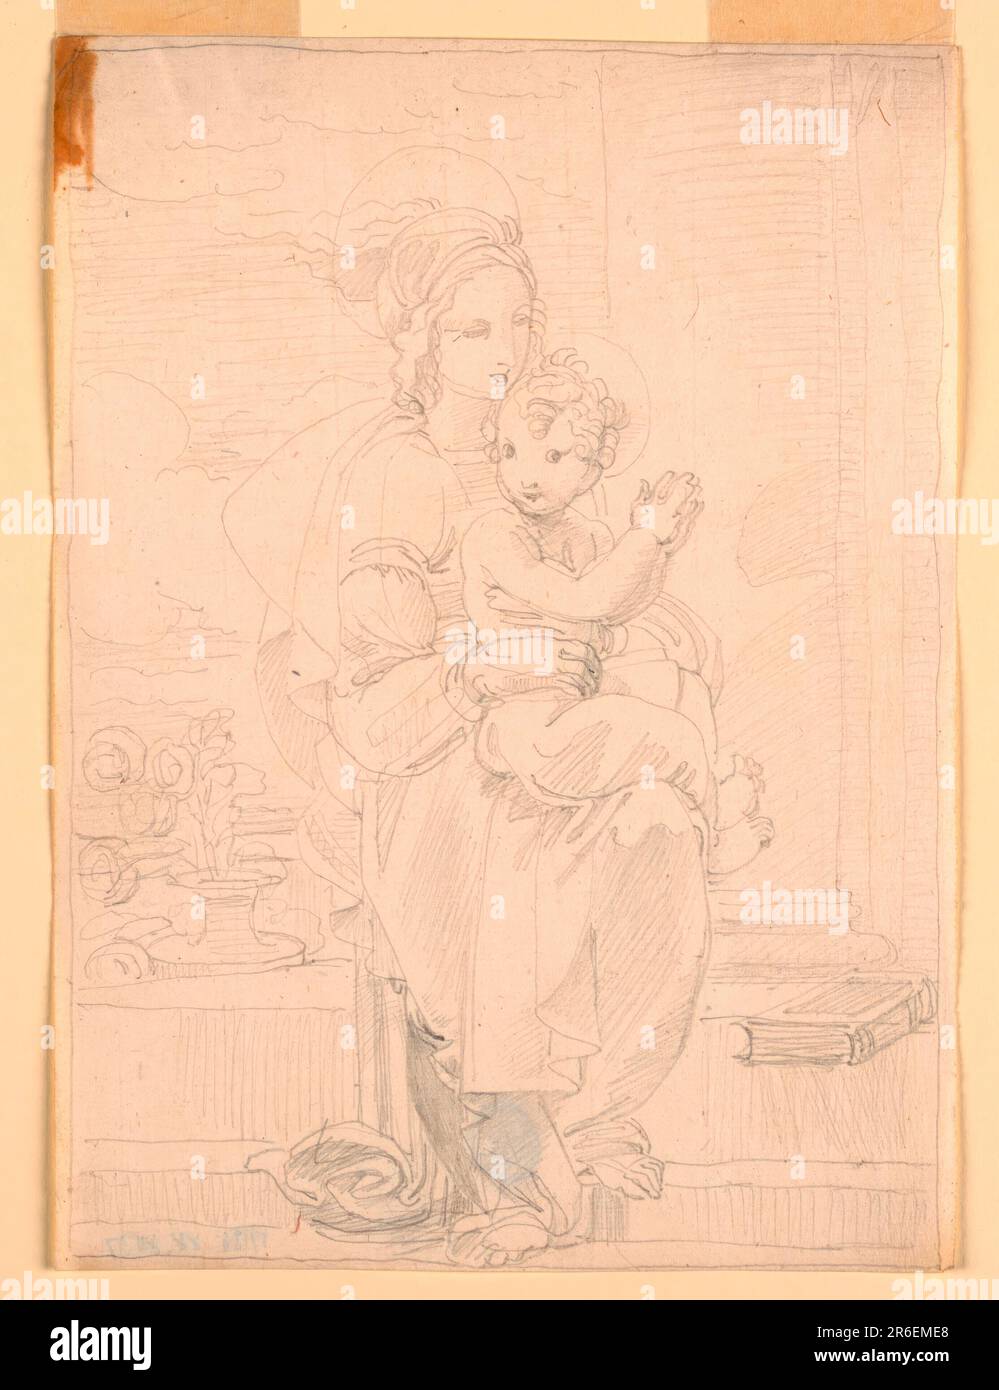 Die Jungfrau steht vor zwei Schritten, die zu einer Struktur führen, deren unterer Teil einer Säule sichtbar ist. Ihr linker Fuß ruht auf der unteren Stufe. D as Kind sitzt auf den Knien und hebt seine Hände wie im Gebet. Auf der oberen Stufe rechts befindet sich ein Buch. Eine Vase mit einem Haufen Rosen steht auf dem Boden. Wolken im linken Hintergrund. Graphit auf Papier. Datum: 1820-1850. Museum: Cooper Hewitt, Smithsonian Design Museum. Stockfoto